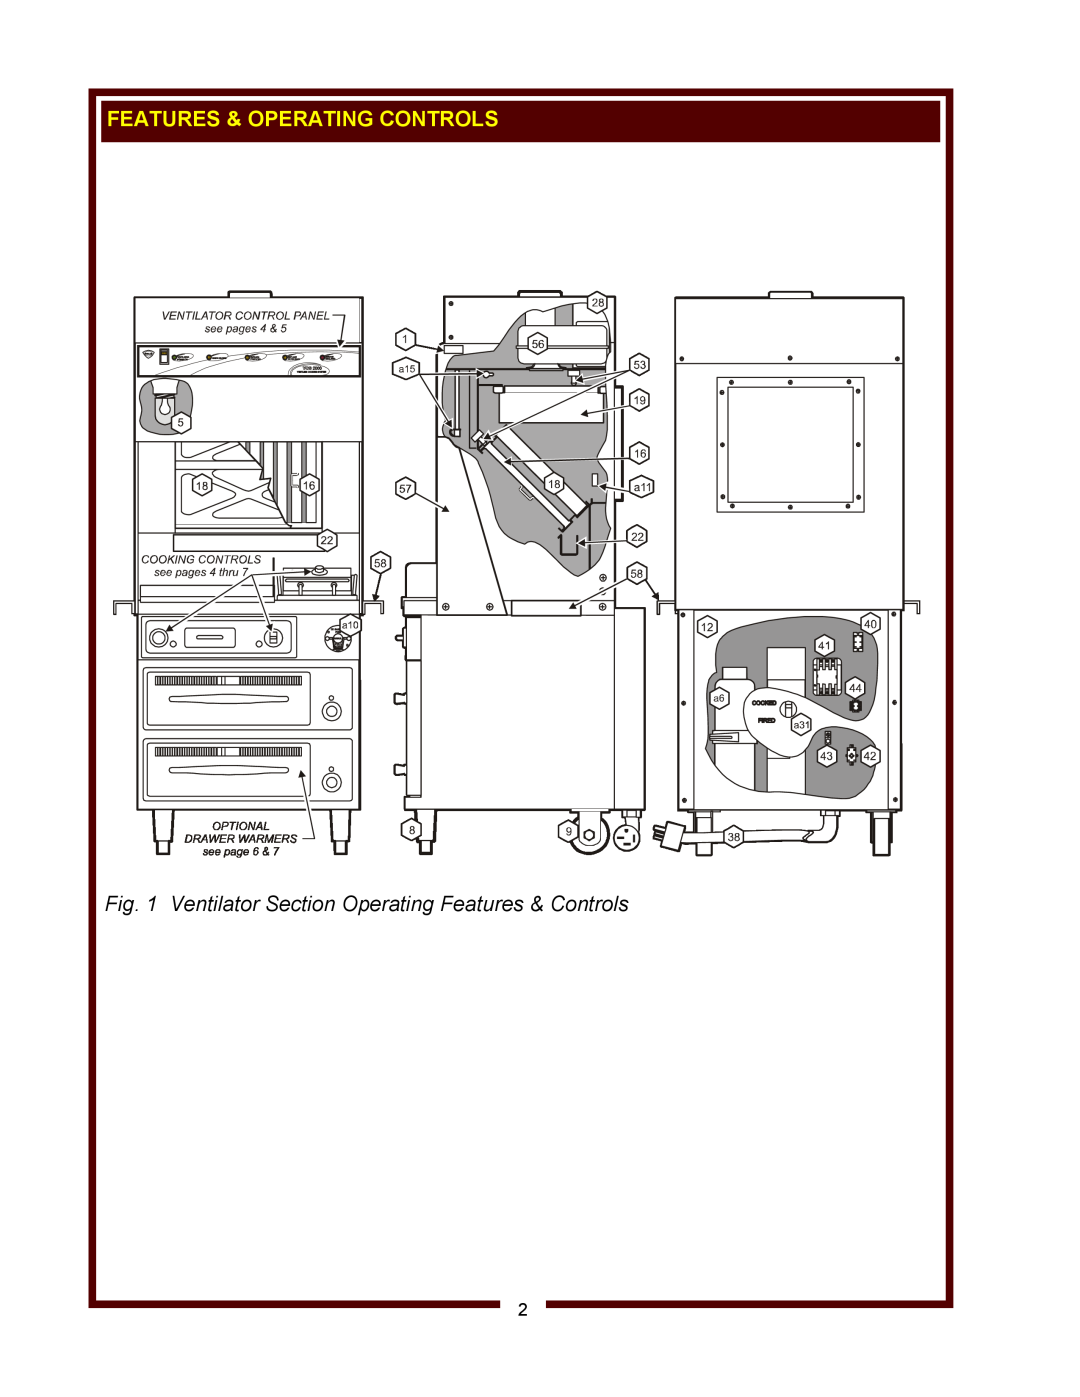 Wells WV-FGRW operation manual Ventilator Section Operating Features & Controls, Features & Operating Controls 